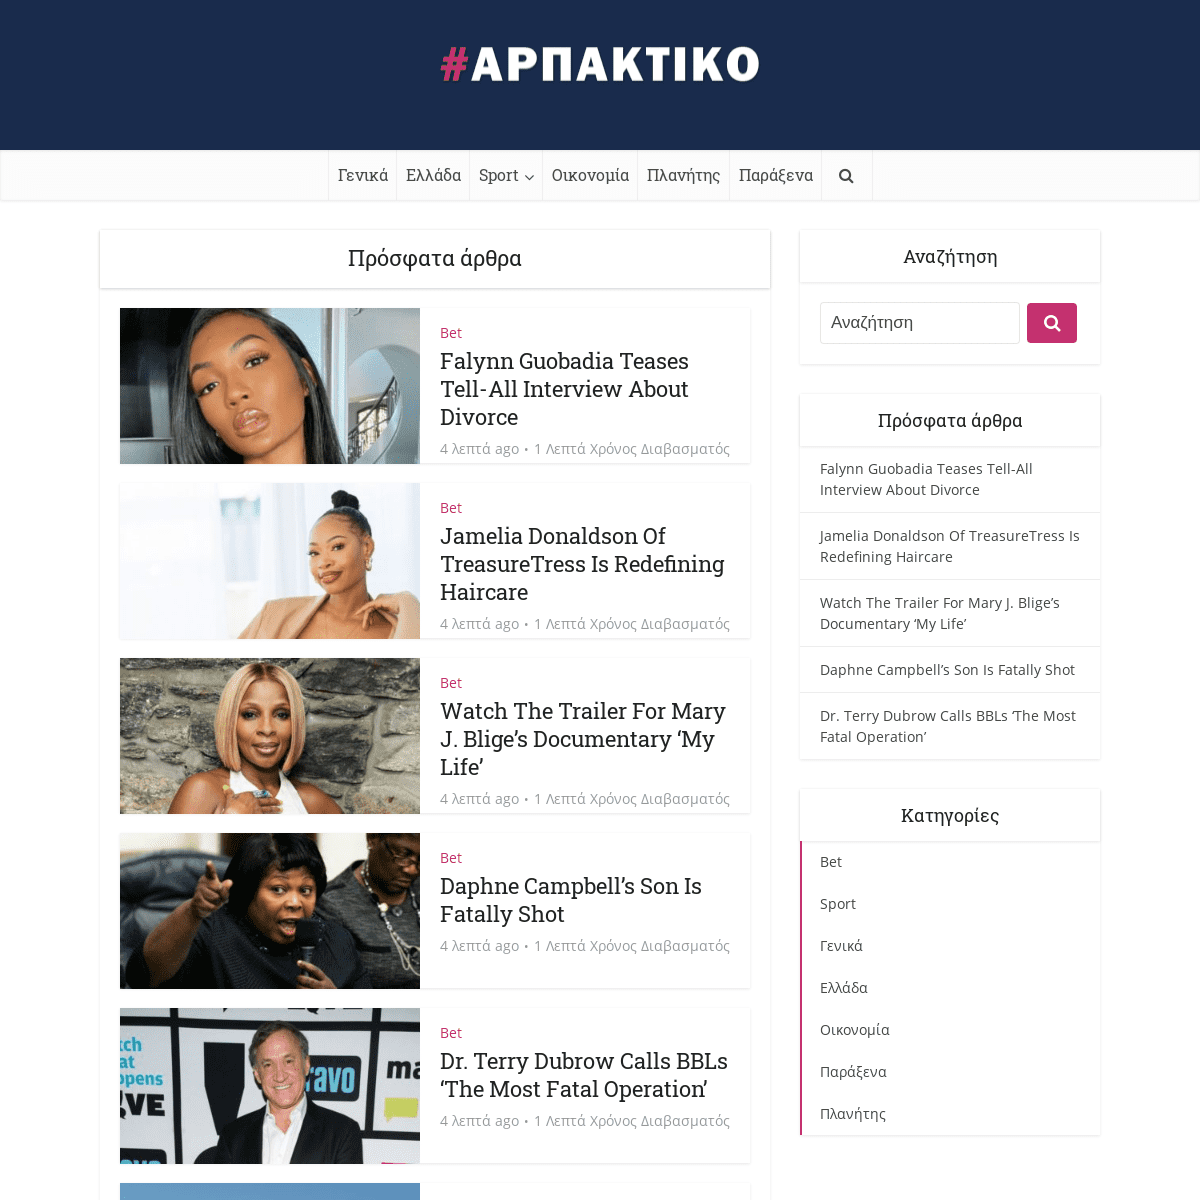 A complete backup of https://arpaktiko.gr